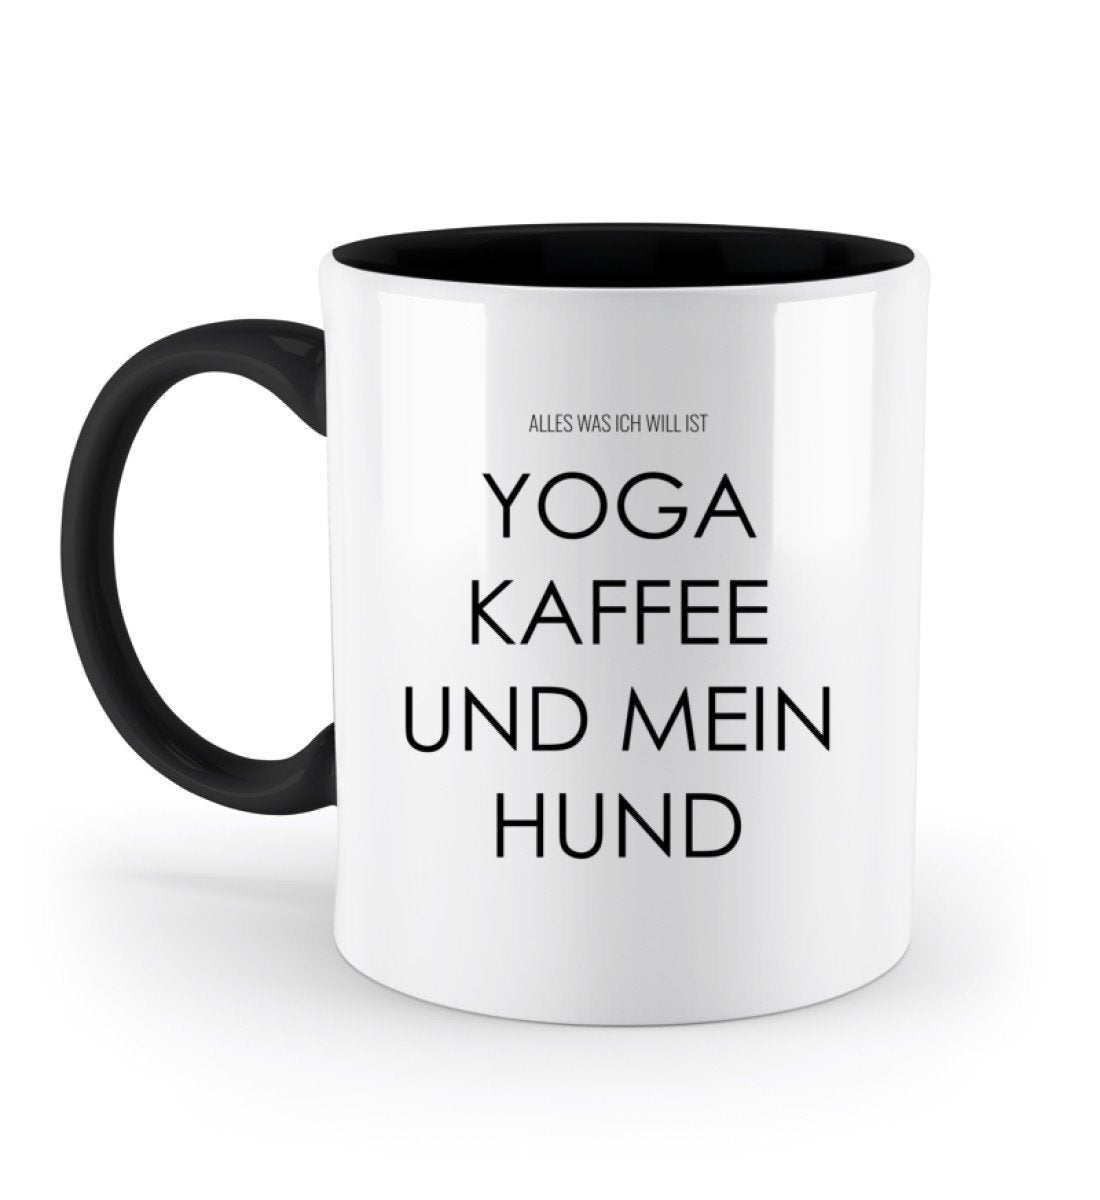 Yoga Kaffee und mein Hund Tasse